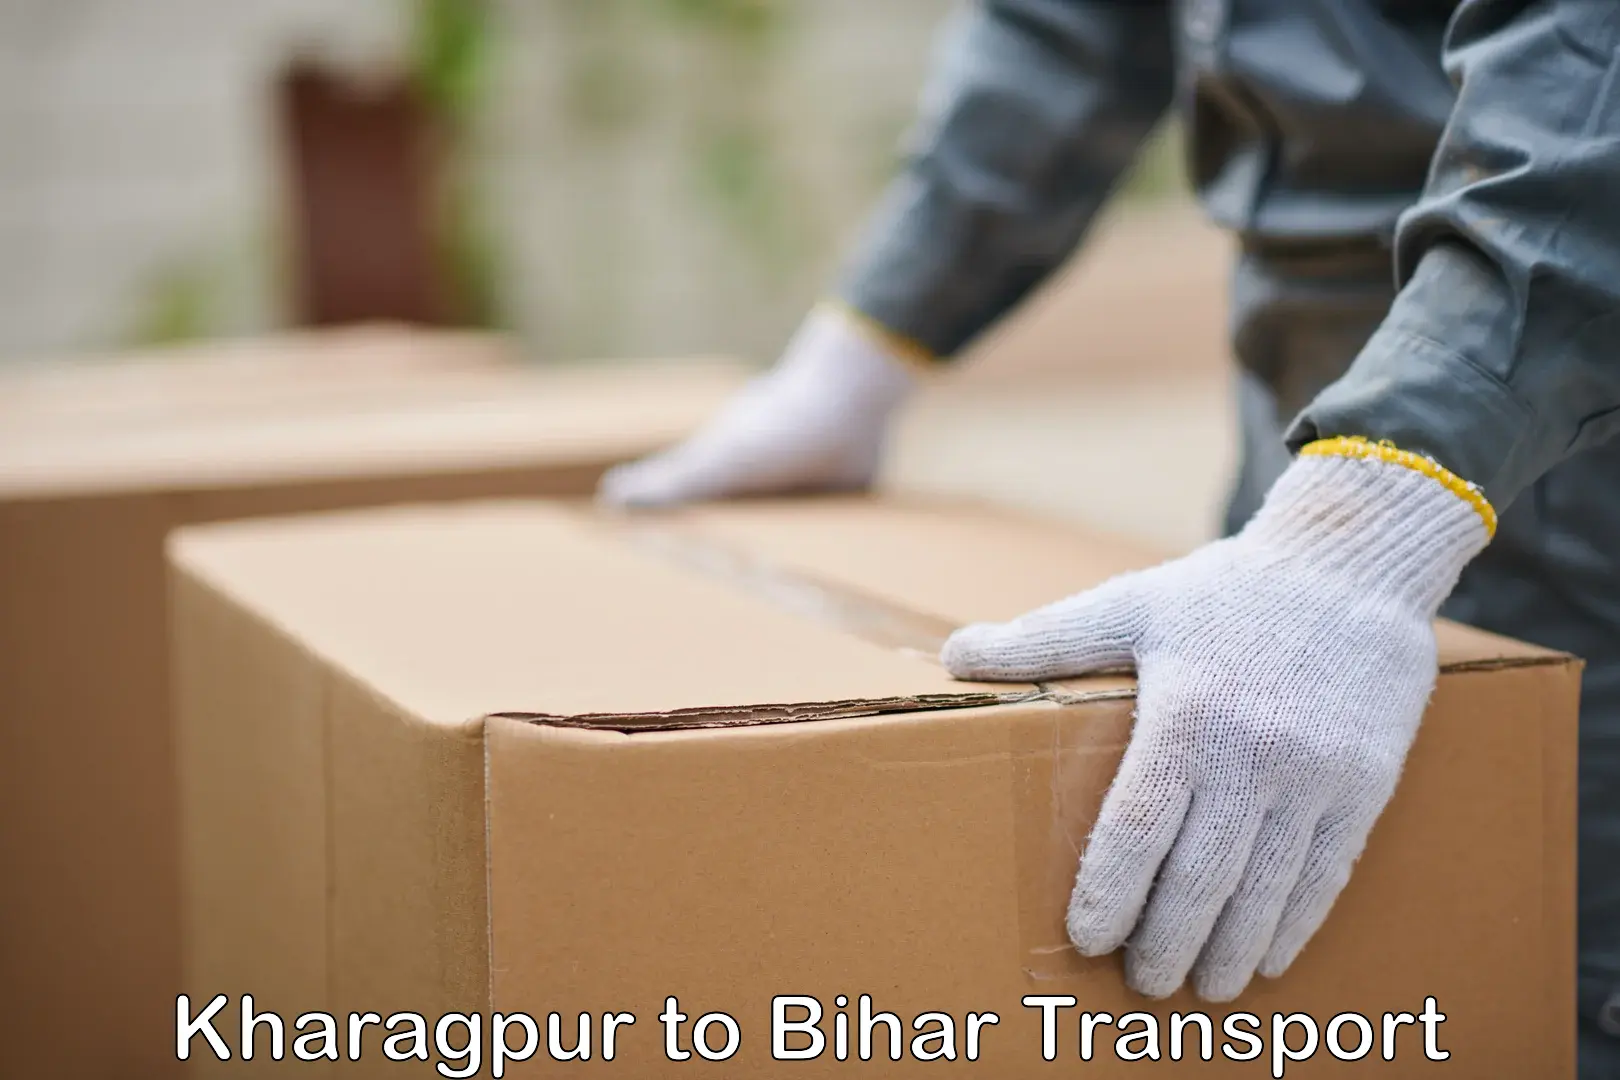 India truck logistics services Kharagpur to Bihar